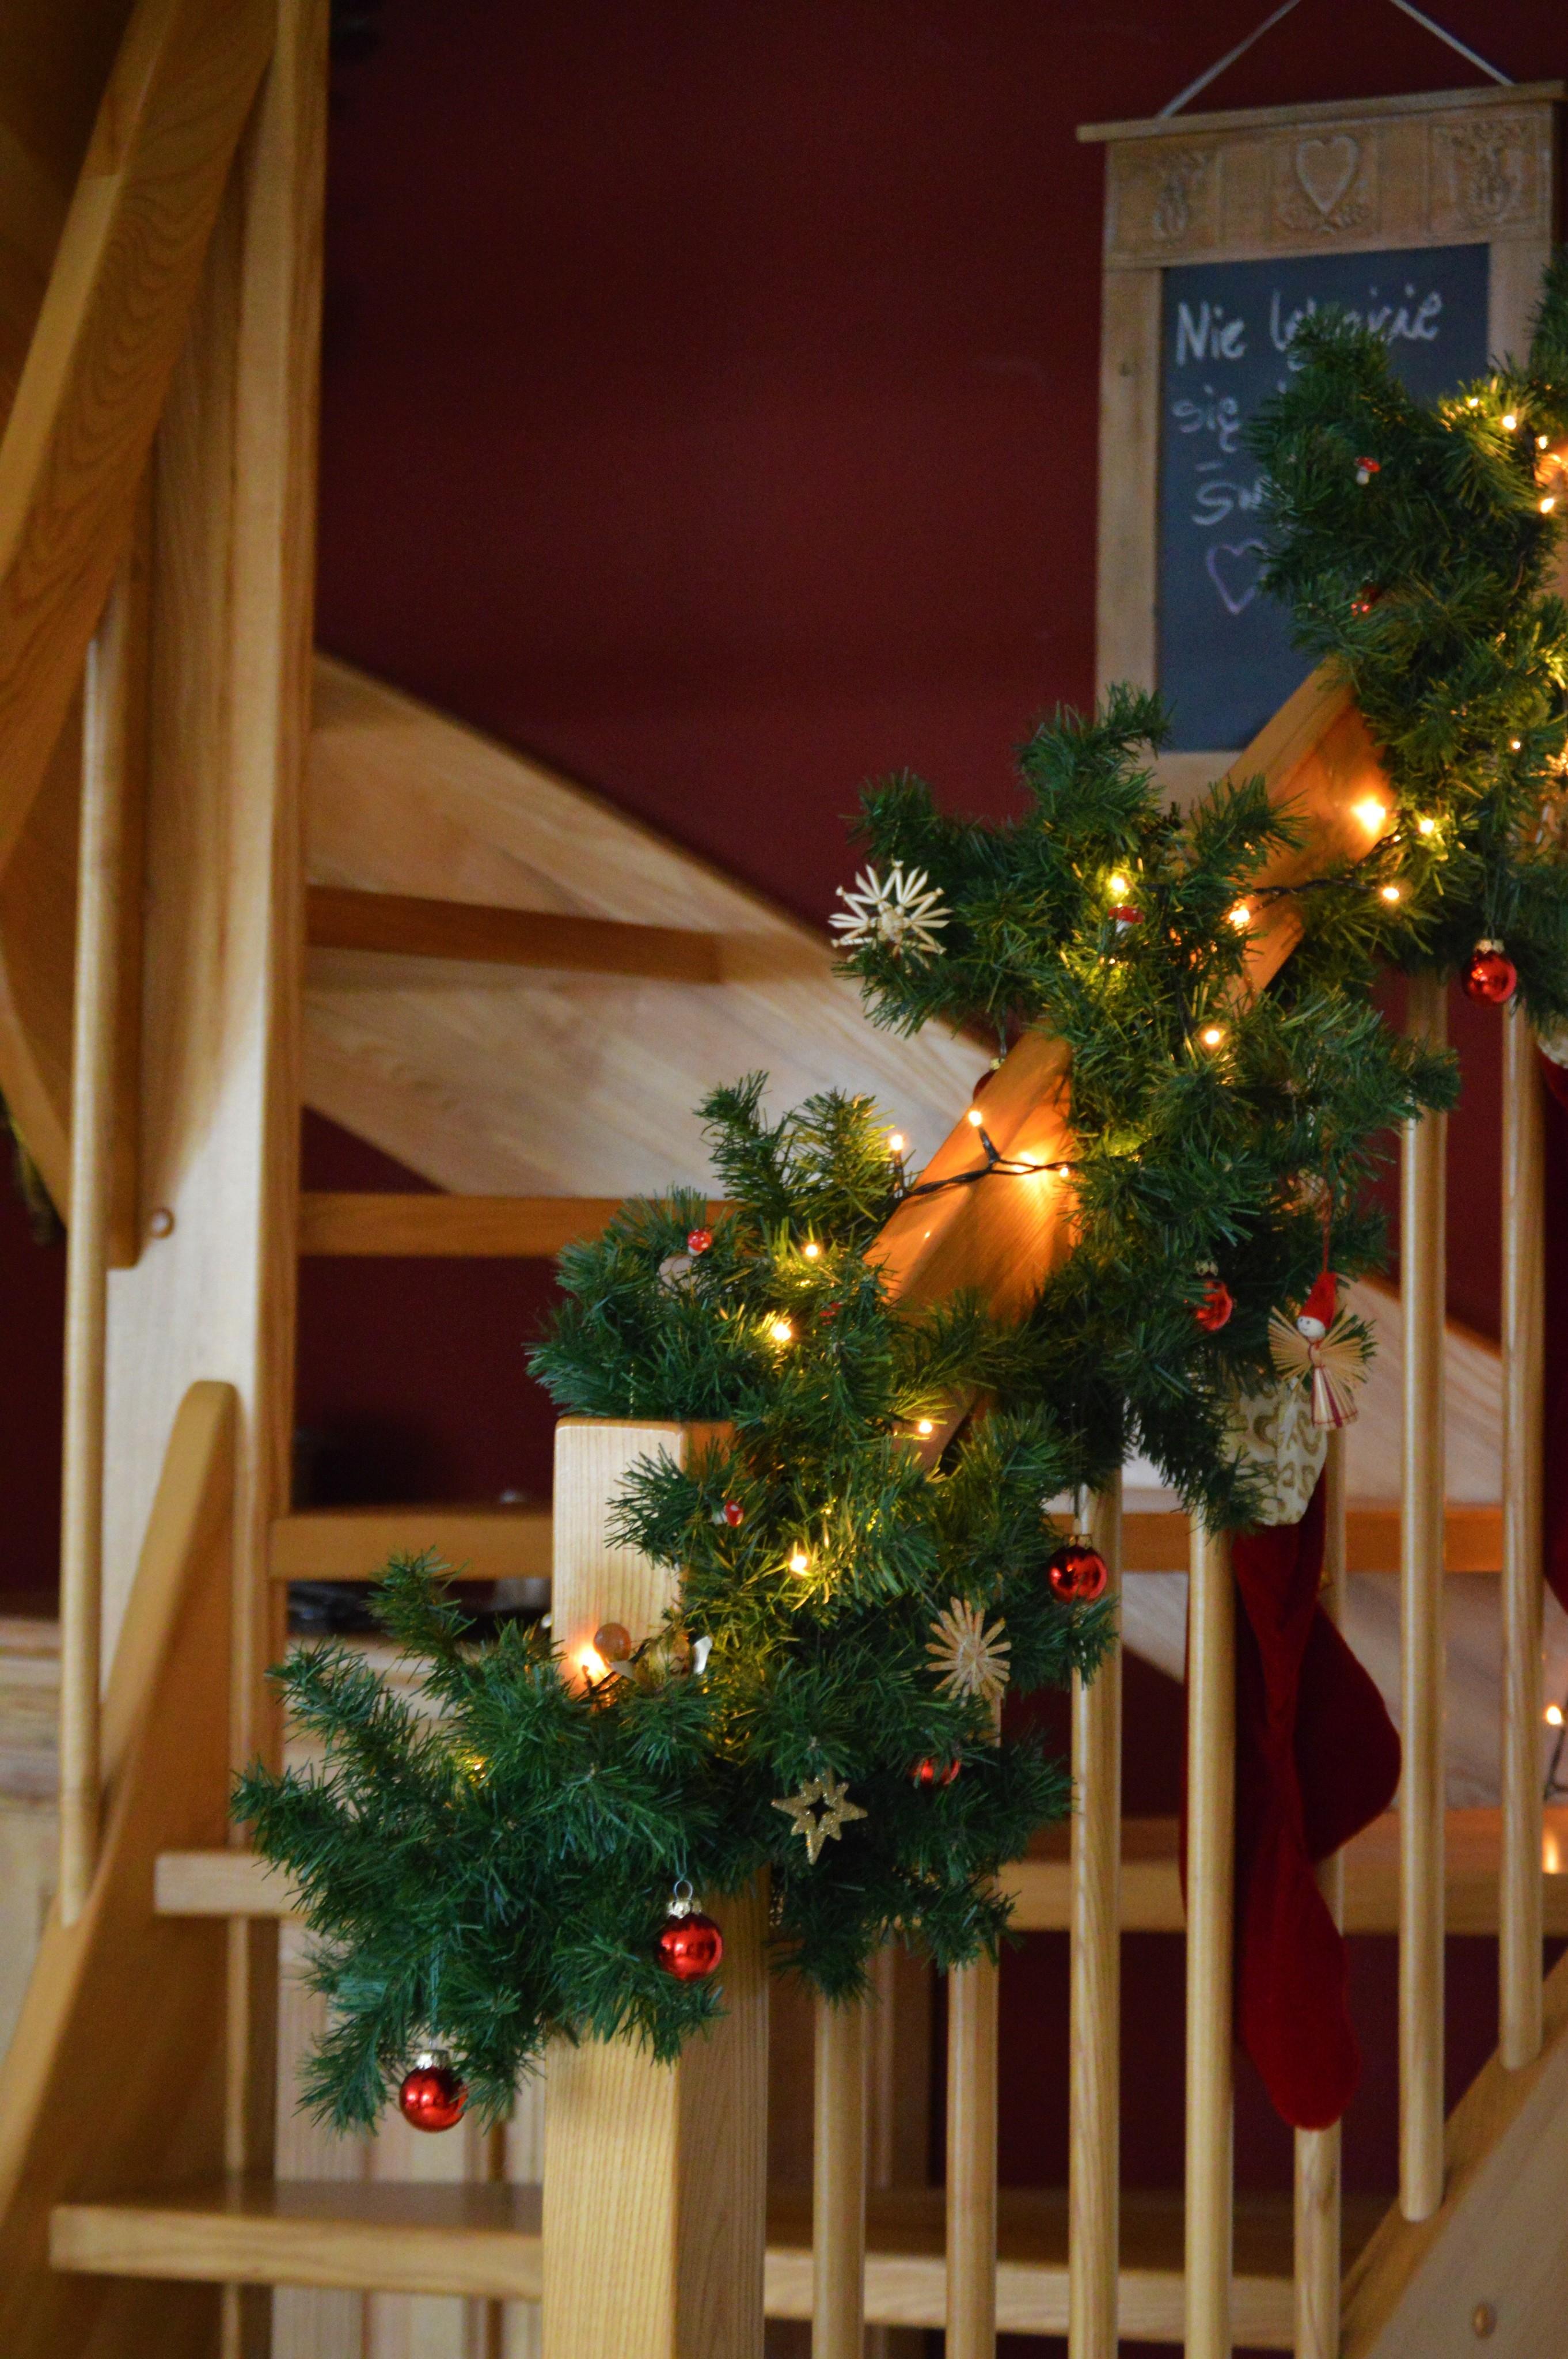 
#weihnachtsdekoration #lichterkette #christbaumkugeln #girlande #treppendekoration #deko 